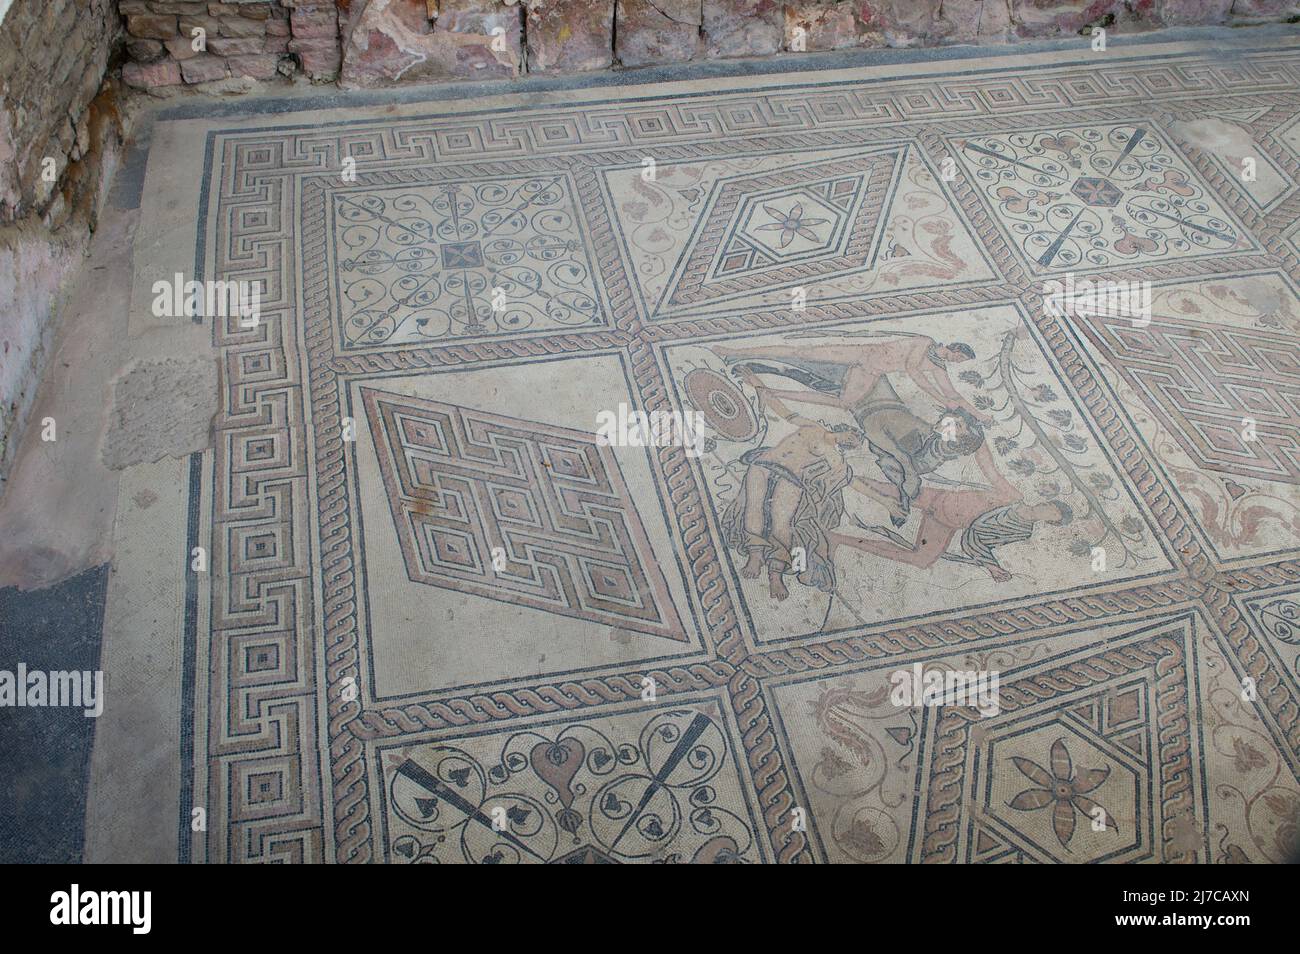 Antiguo mosaico de suelo romano con escena mitológica, llamado el Castigo de Dirce, encontrado en Pula, Croacia Foto de stock